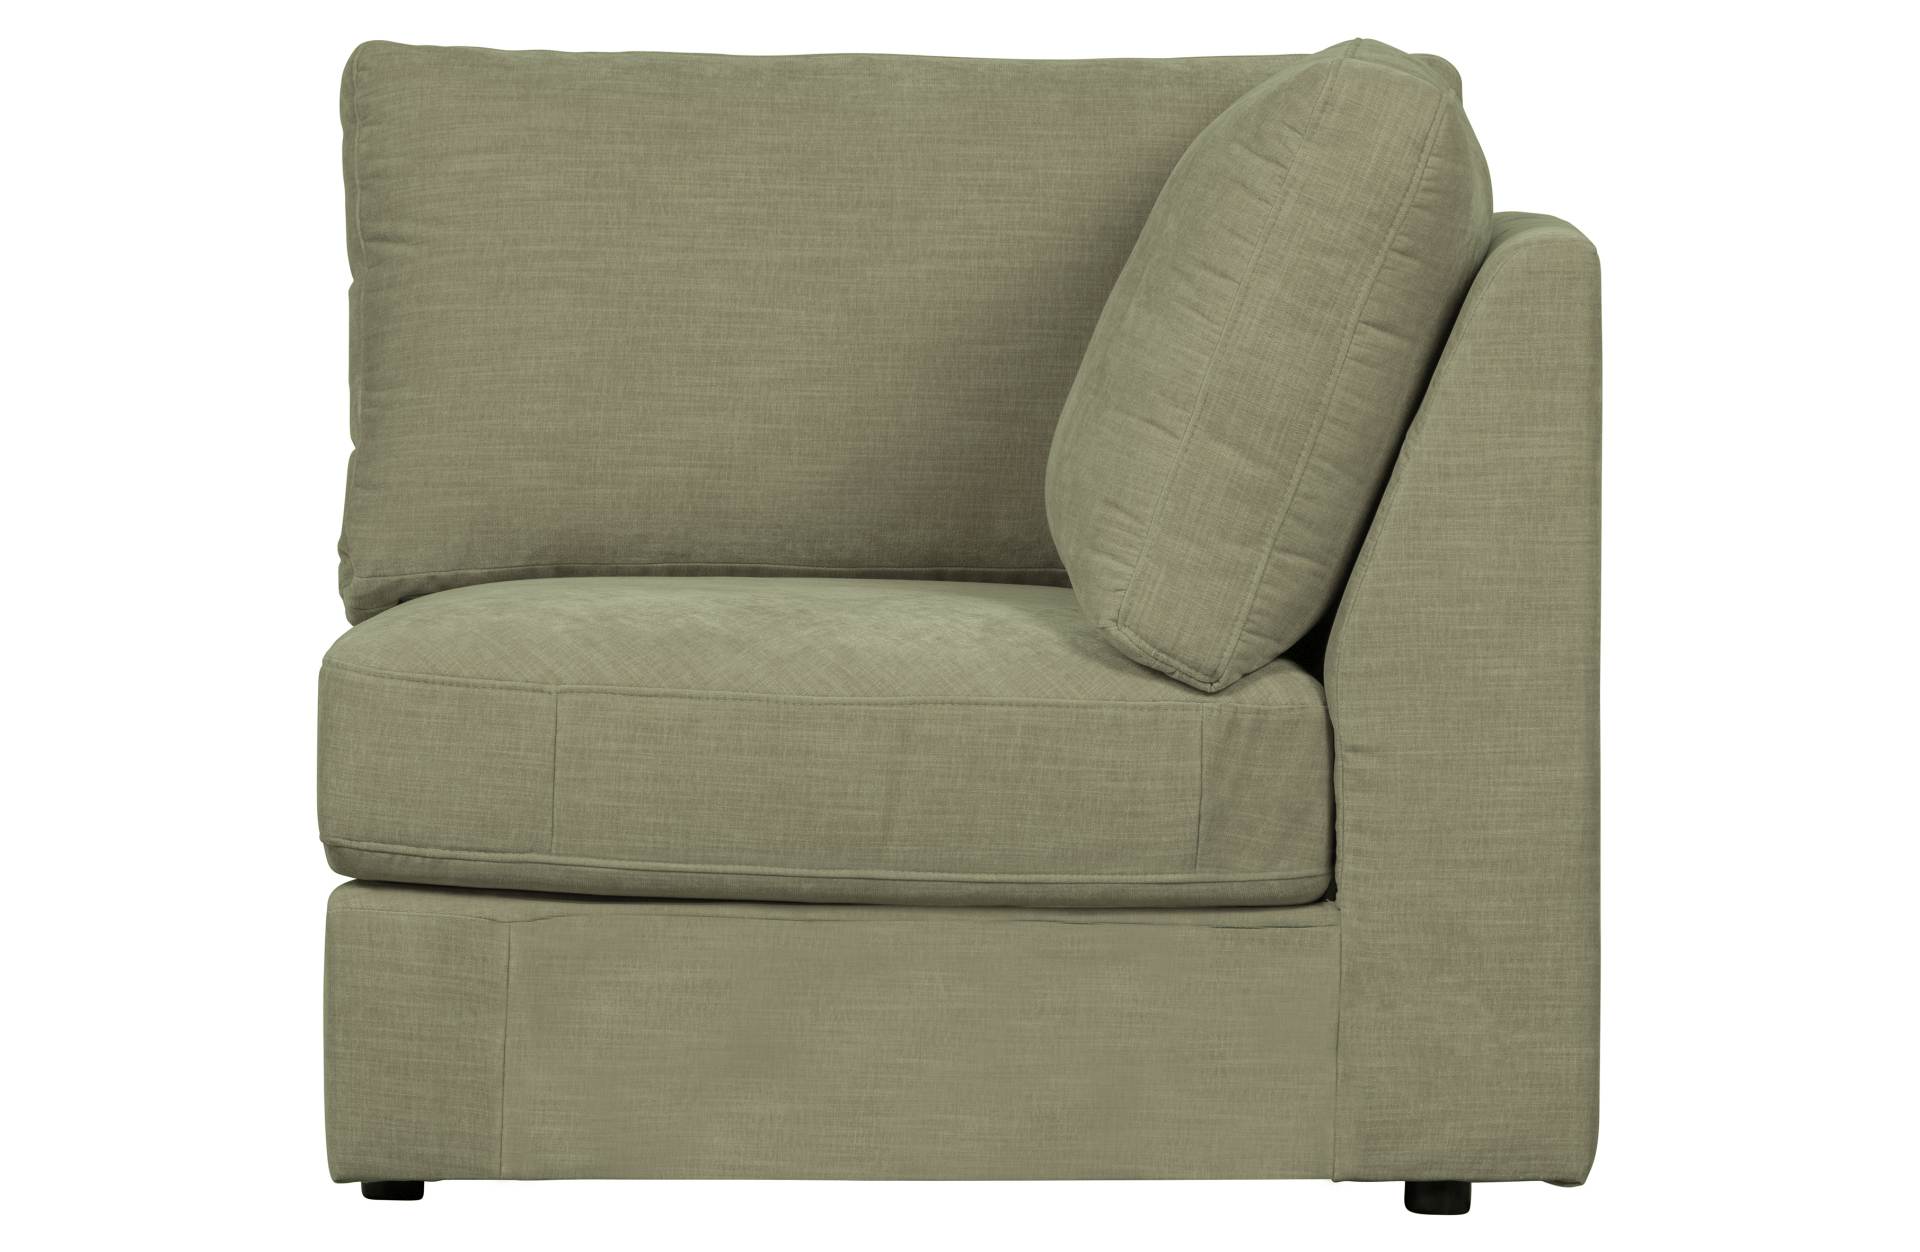 Das Modulsofa Family überzeugt mit seinem modernen Design. Das Eck Element wurde aus Gewebe-Stoff gefertigt, welcher einen einen grünen Farbton besitzen. Das Gestell ist aus Metall und hat eine schwarze Farbe. Das Element hat eine Sitzhöhe von 44 cm.